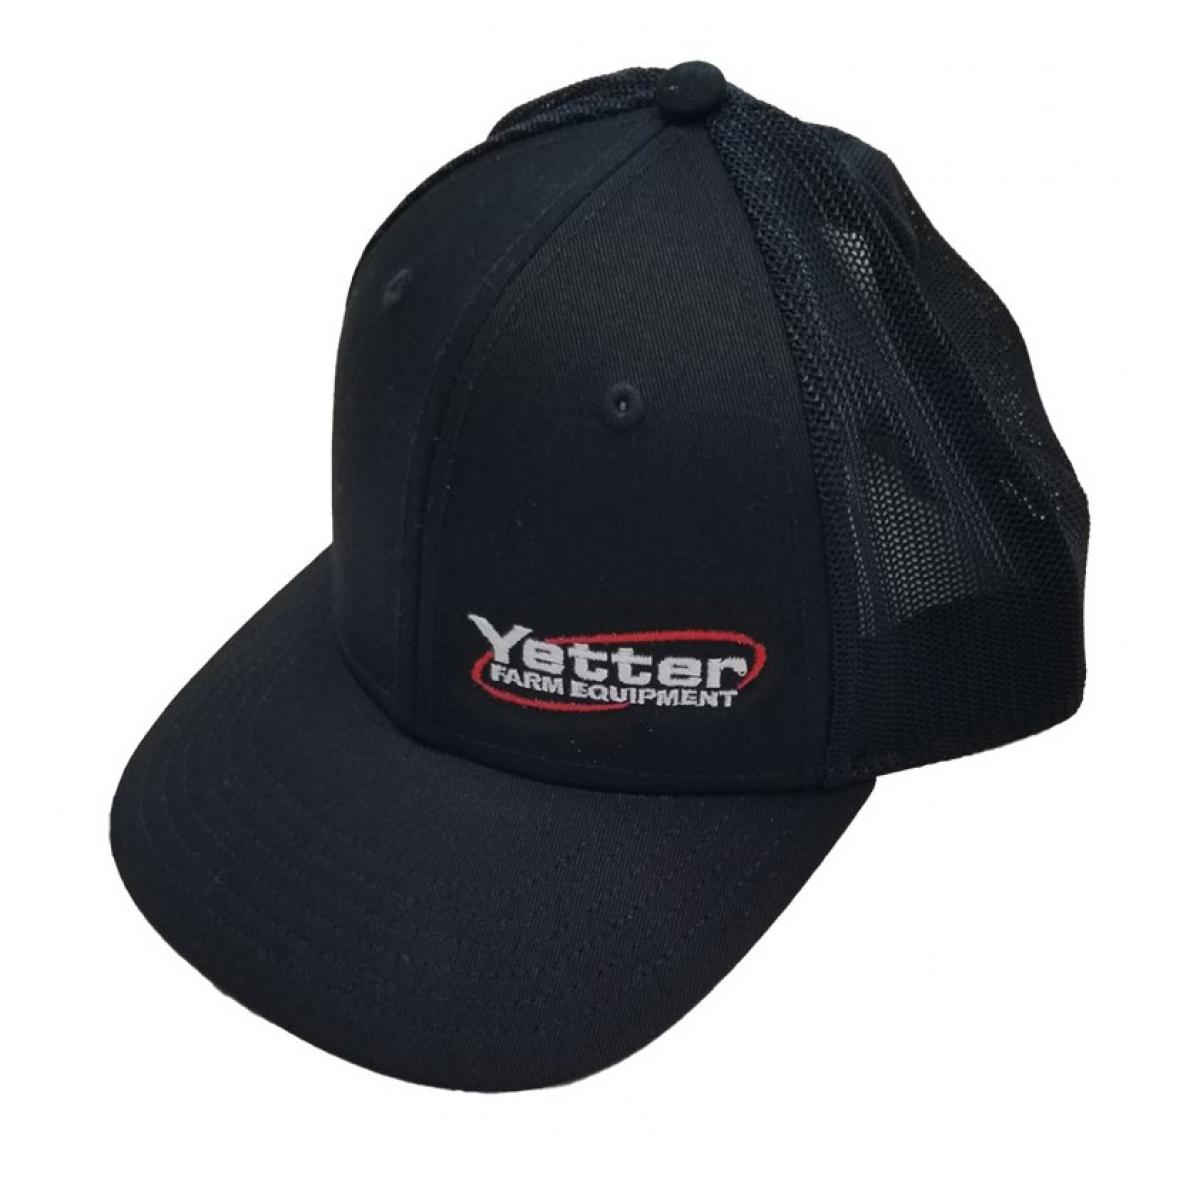 Black Yetter trucker hat